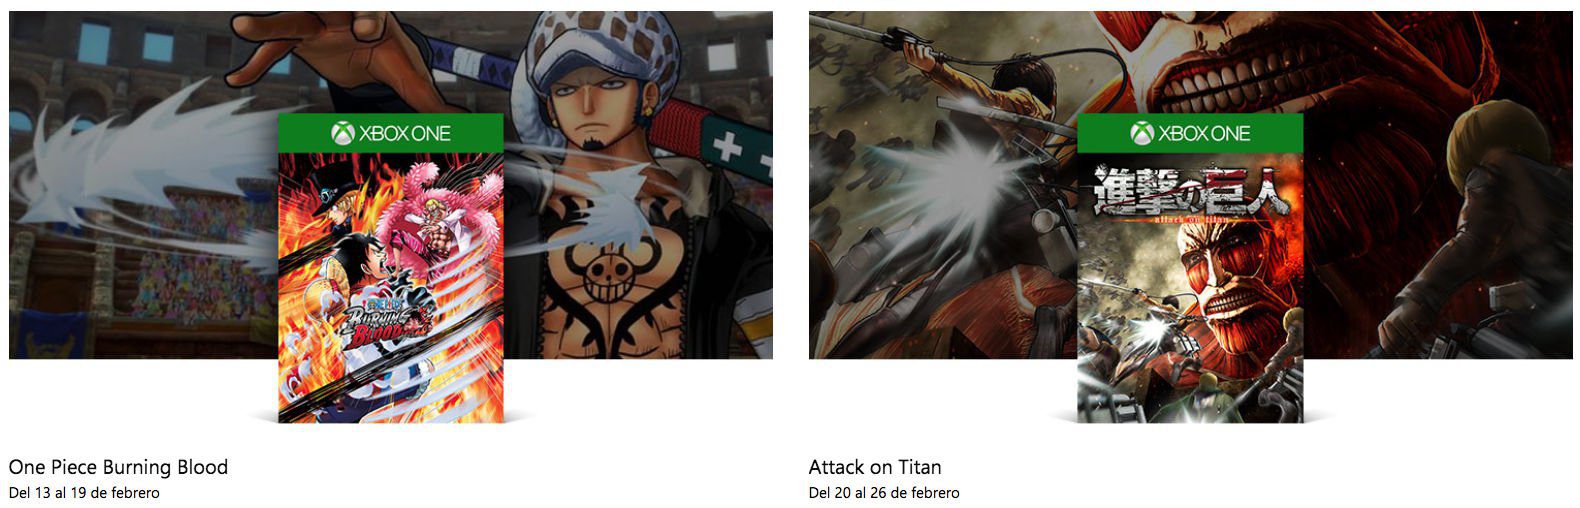 Repasamos los 5 títulos basados en anime que llegarán a Xbox One este 2018 - Además del recientemente lanzado Dragon Ball FighterZ, Xbox One recibirá hasta 5 nuevos títulos basados en anime este 2018. Los repasamos.